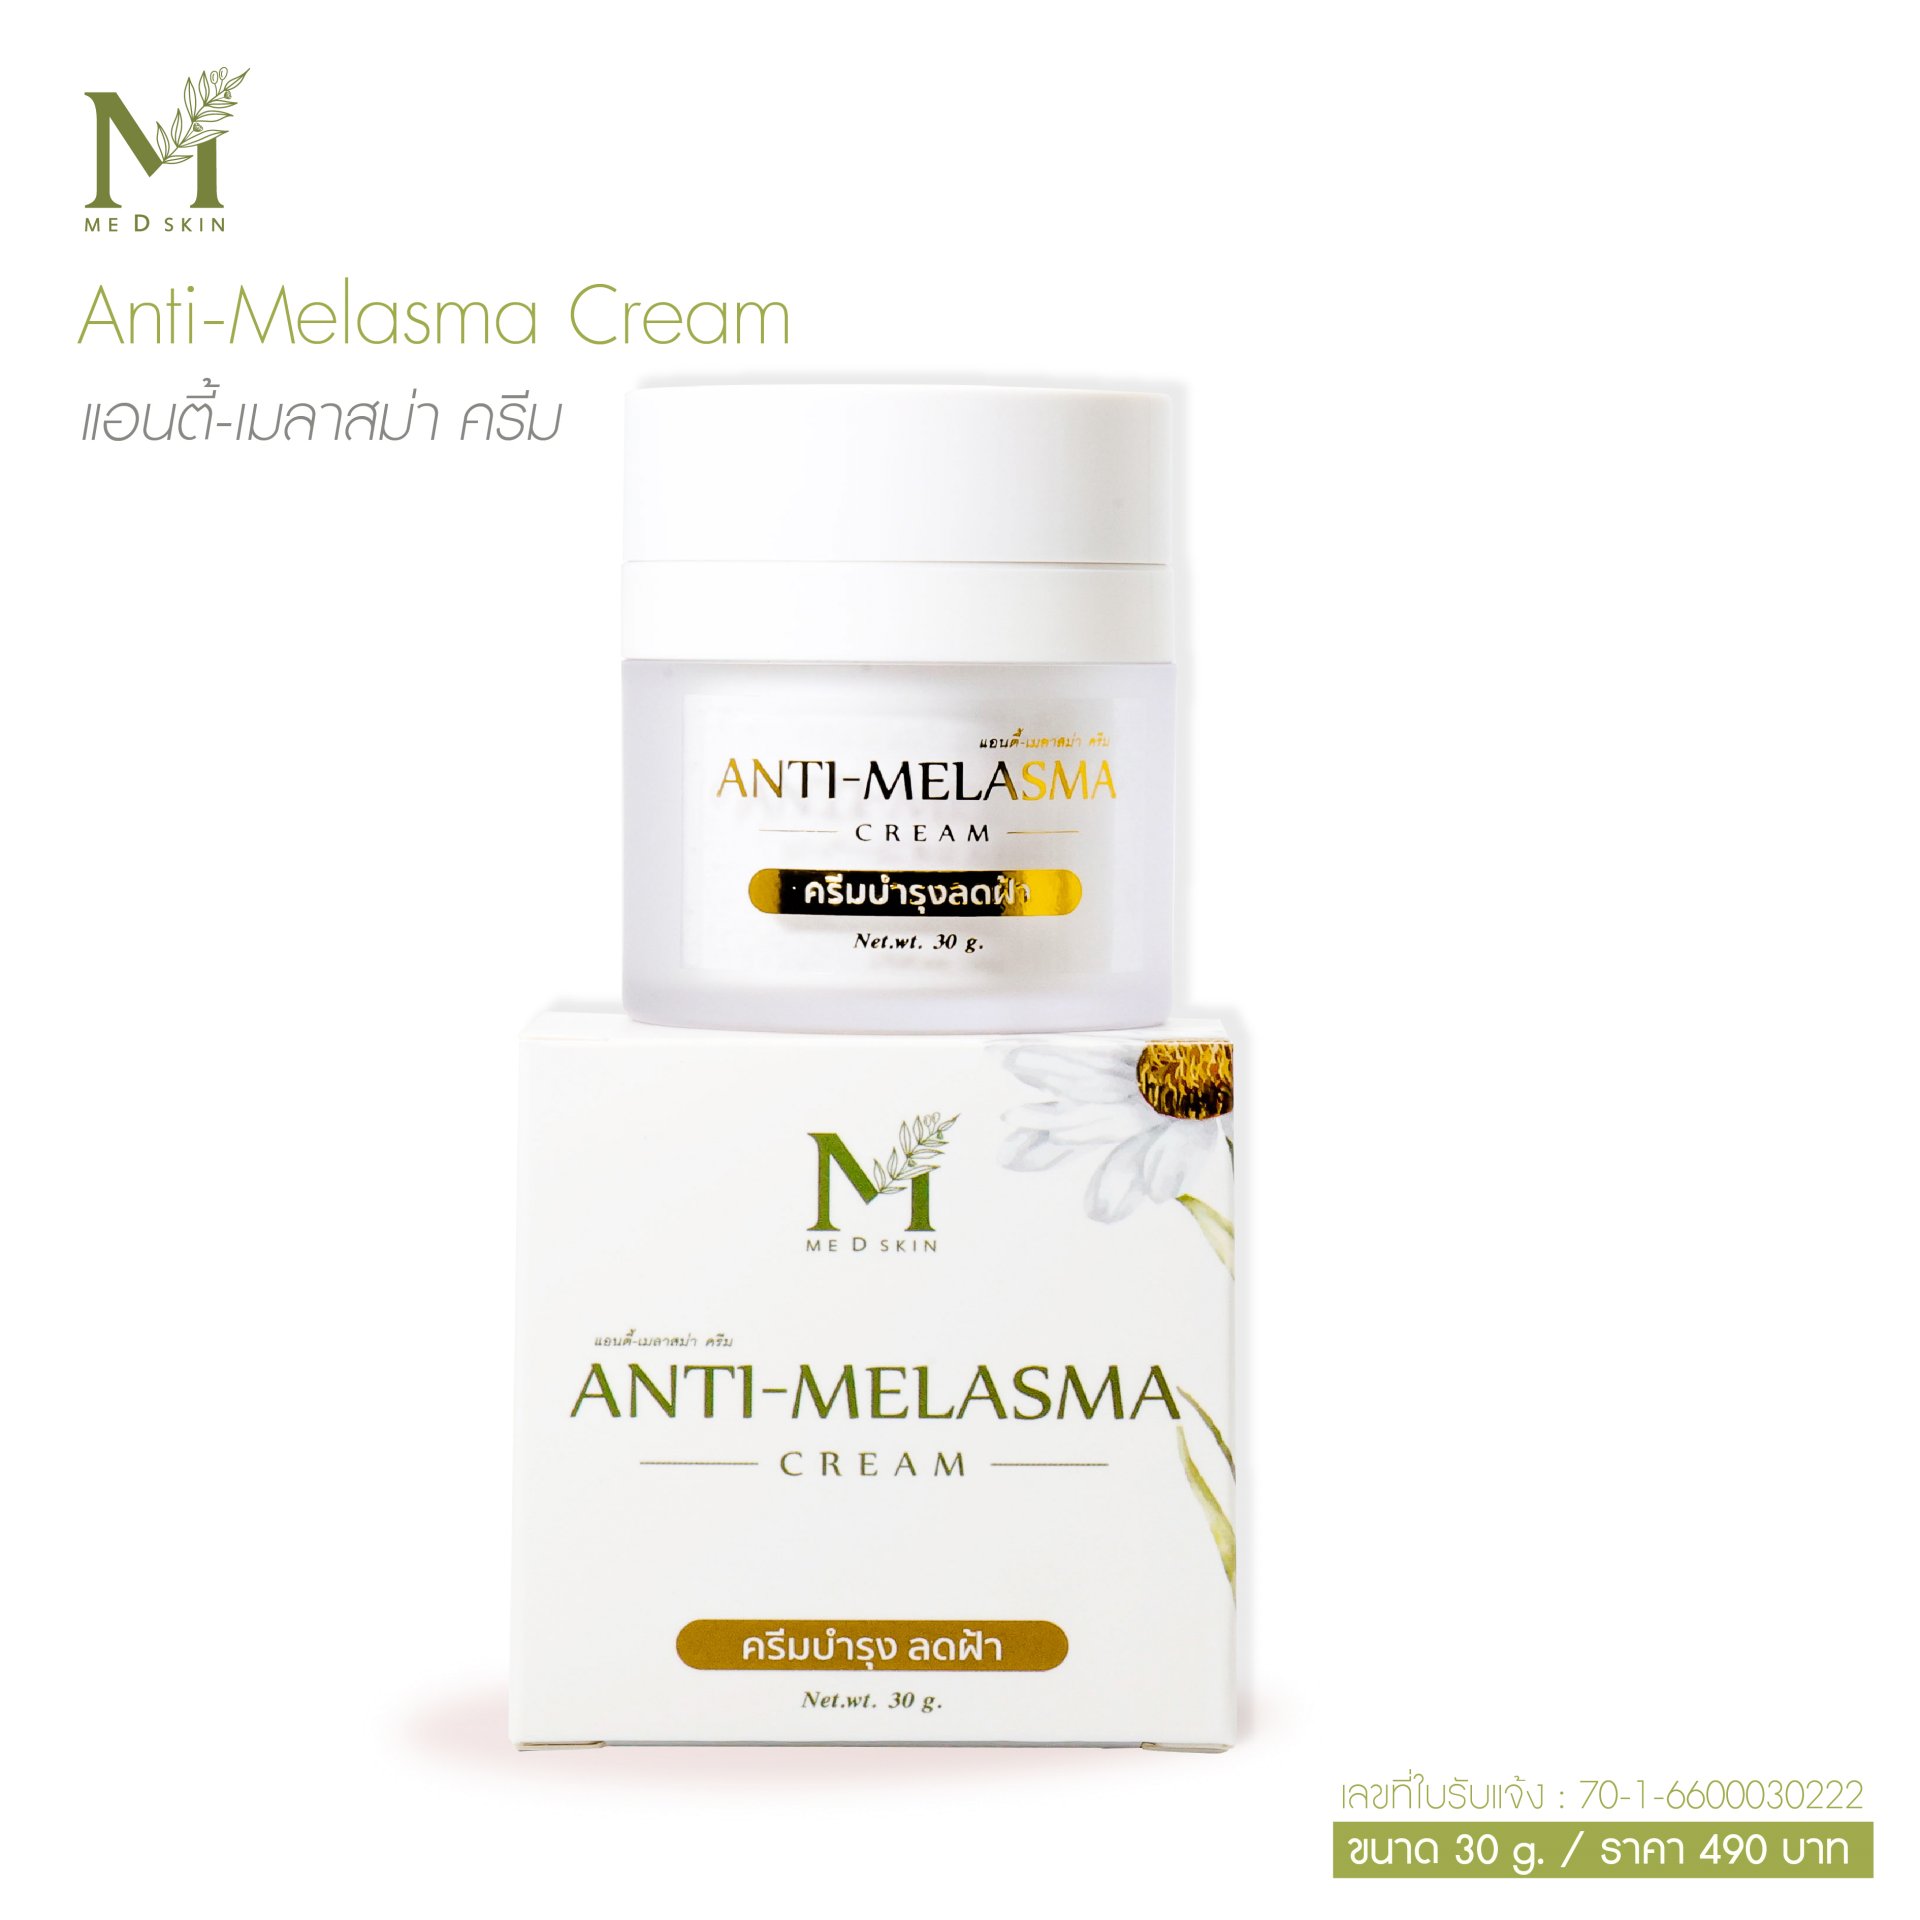 Anti-Melasma Cream